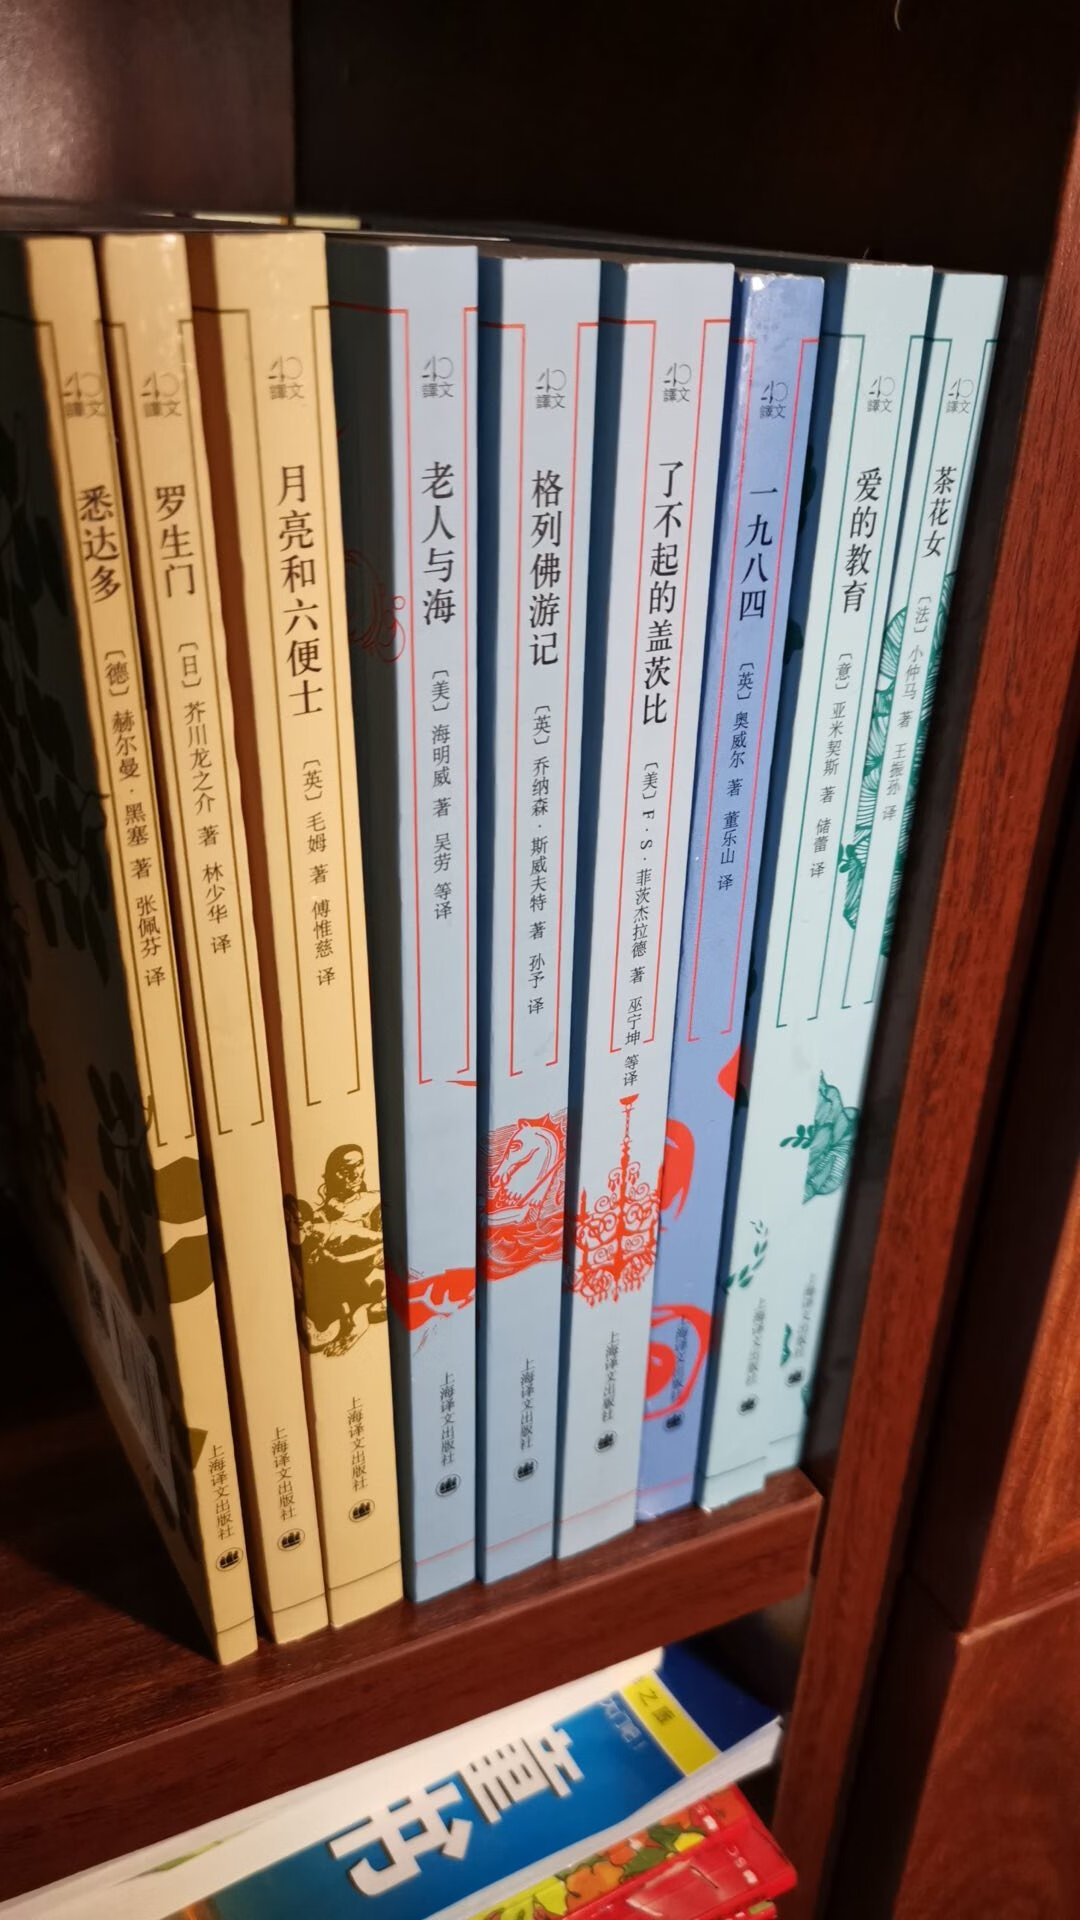 买书就图书馆，活动多多，送货还快。上海译文的还是值得看的，买了几本看。